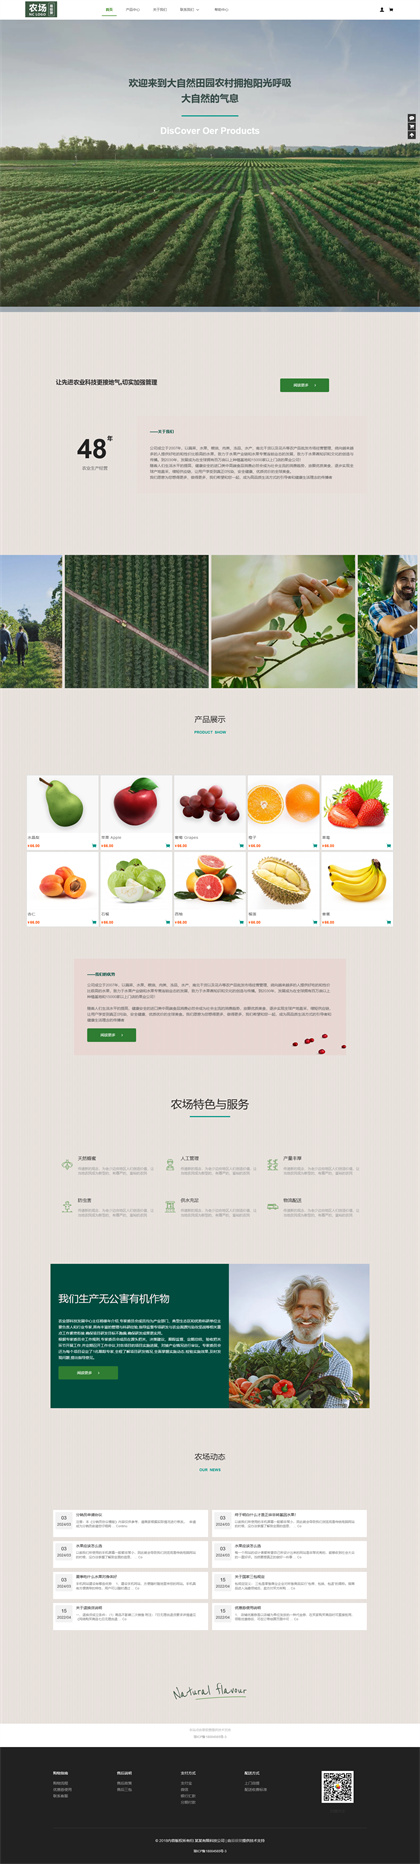 田园农场-农业-种植业--瓜果蔬菜商城网站模板网站模板图片